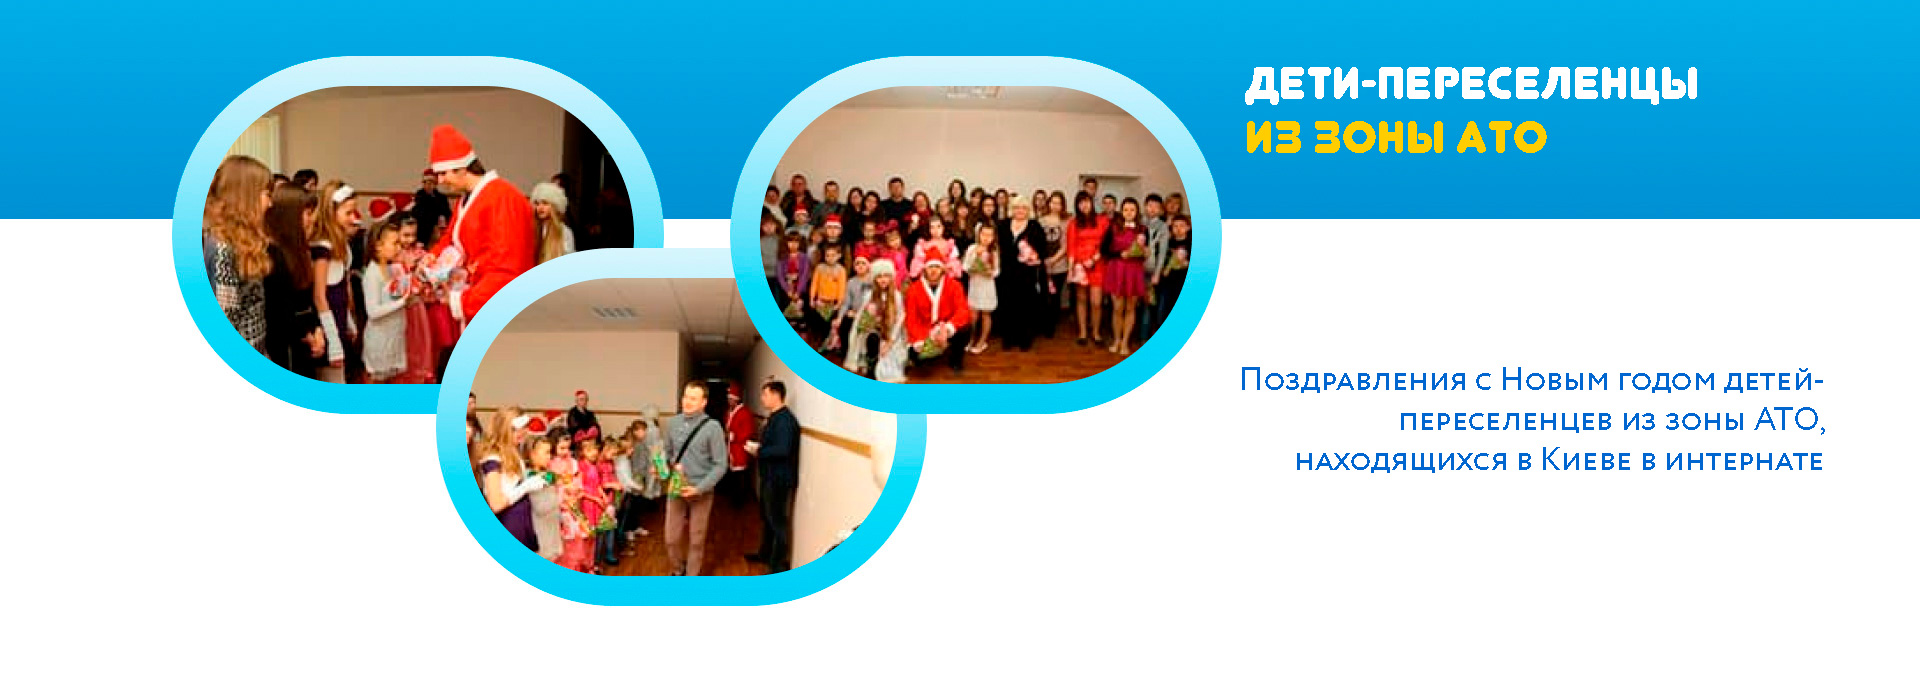 Поздравления с Новым годом детей- переселенцев из зоны АТО, находящихся в Киеве в интернате